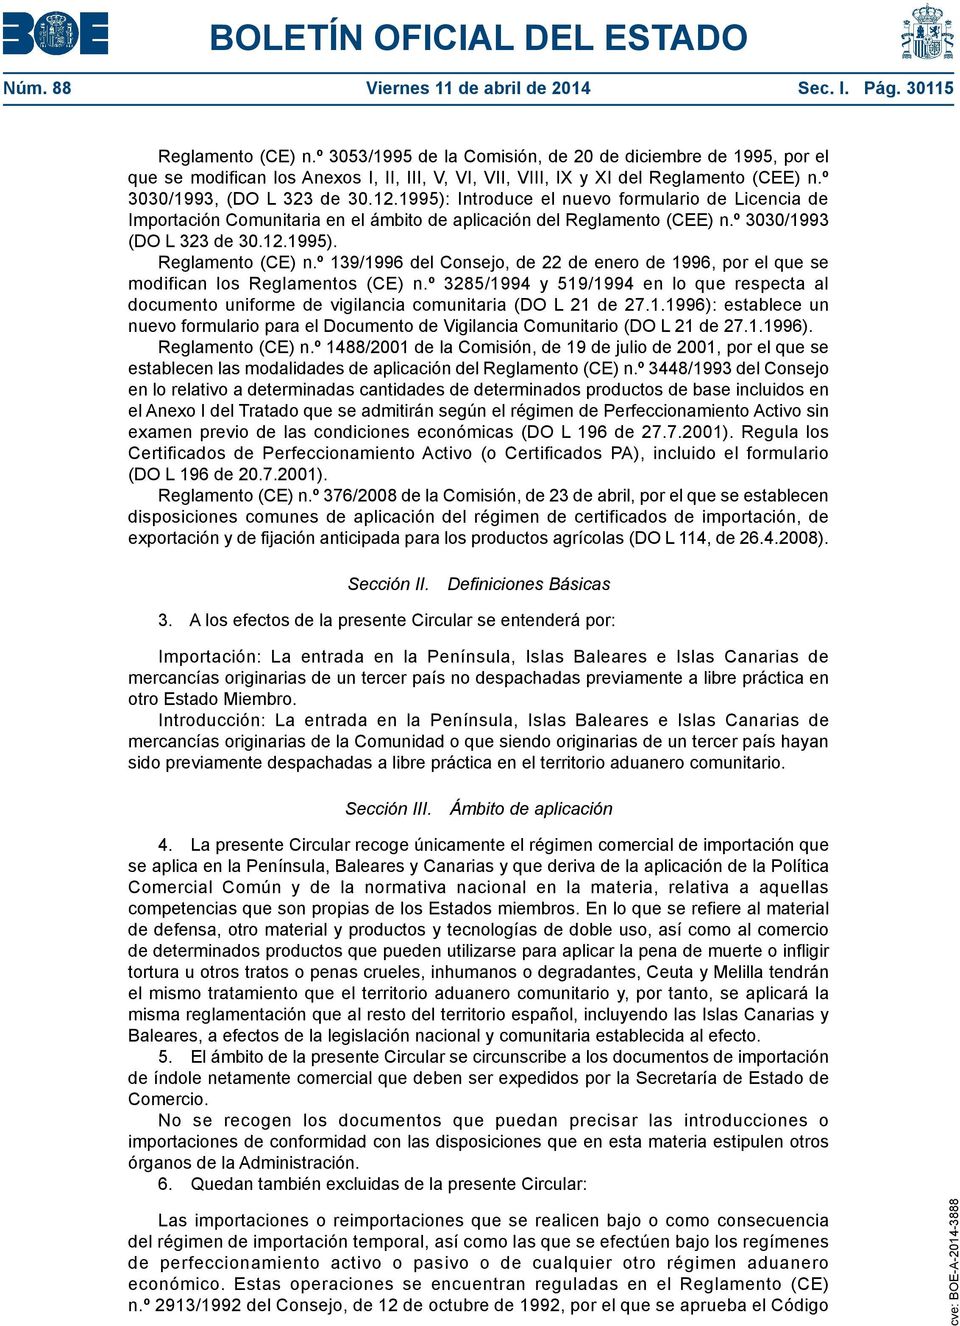 1995): Introduce el nuevo formulario de Licencia de Importación Comunitaria en el ámbito de aplicación del Reglamento (CEE) n.º 3030/1993 (DO L 323 de 30.12.1995). Reglamento (CE) n.